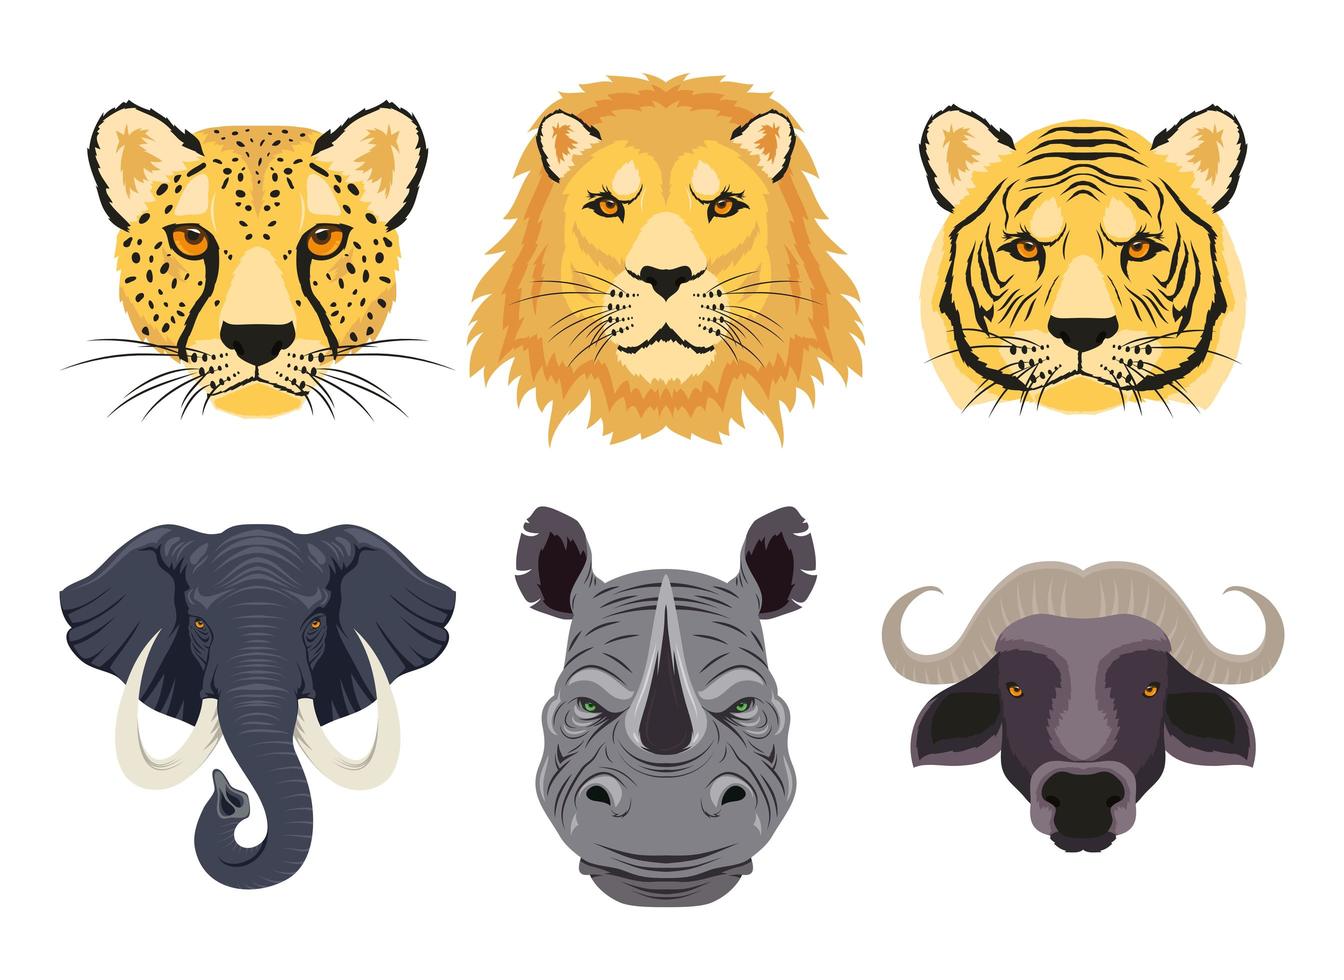 wilde dieren karakters head set vector